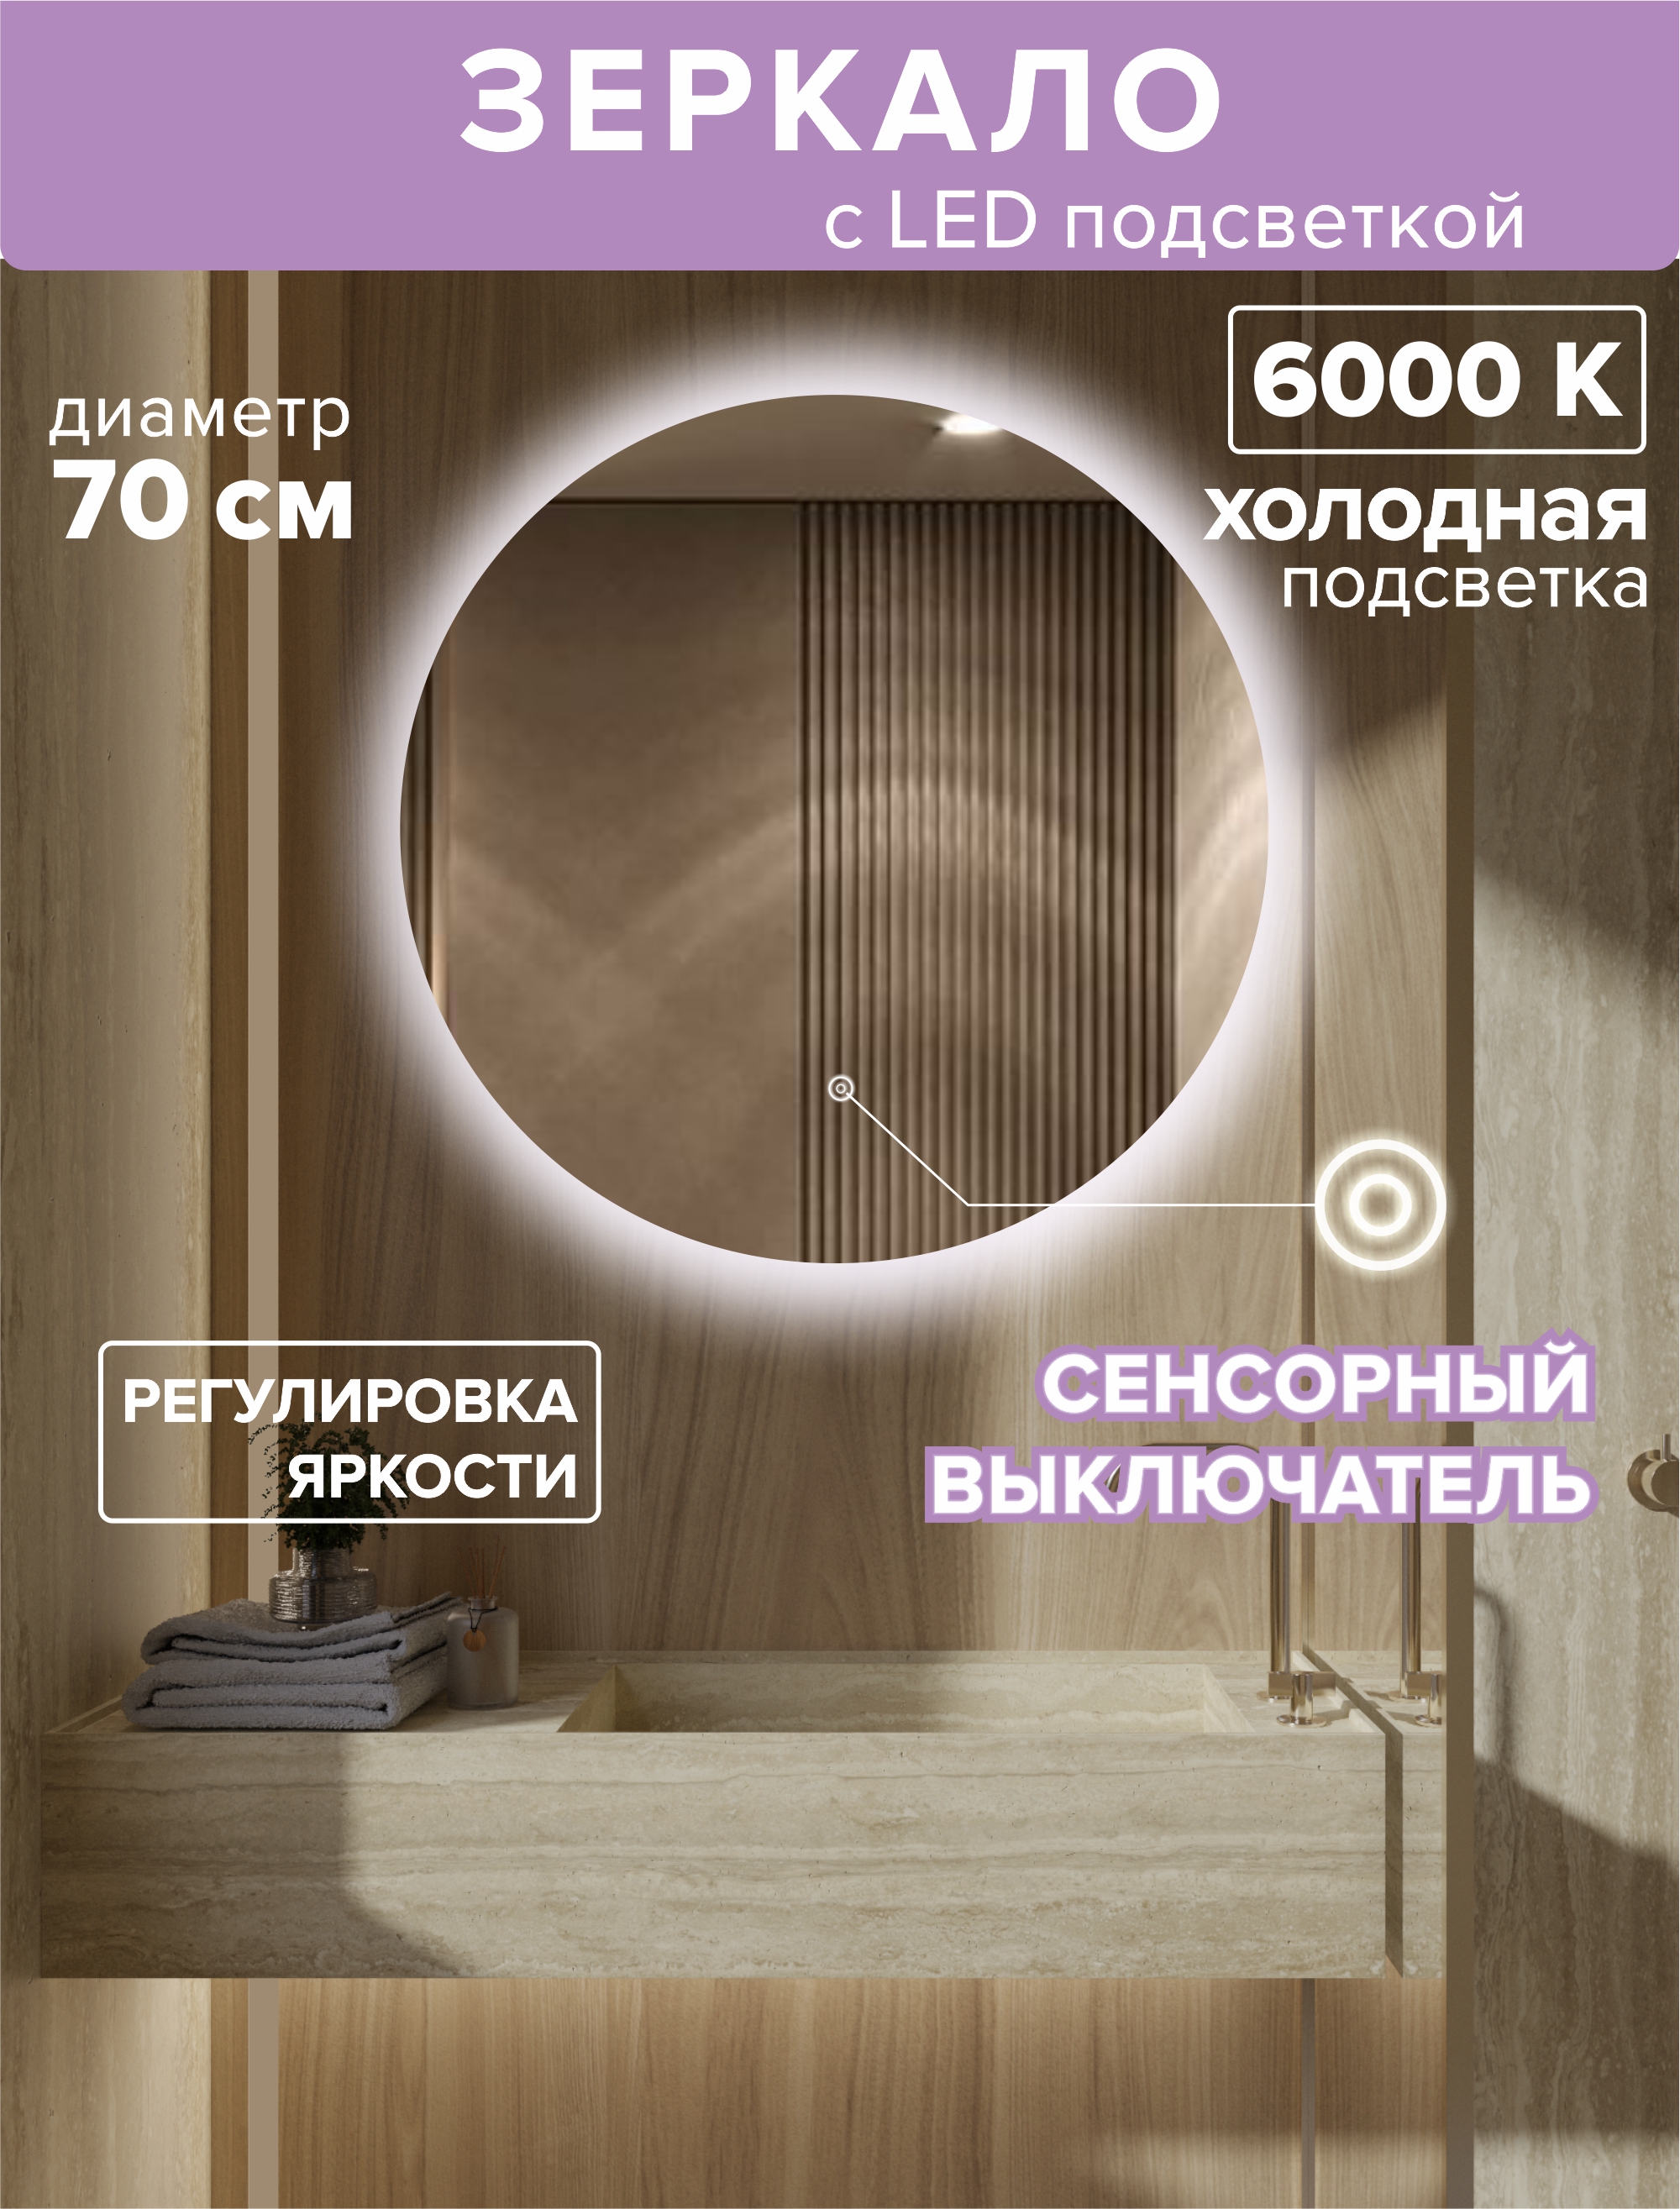 Зеркало с подсветкой круглое 70см. Подсветка холодная (6500К) подсветка для зеркал maytoni bris mir008wl l12b4k